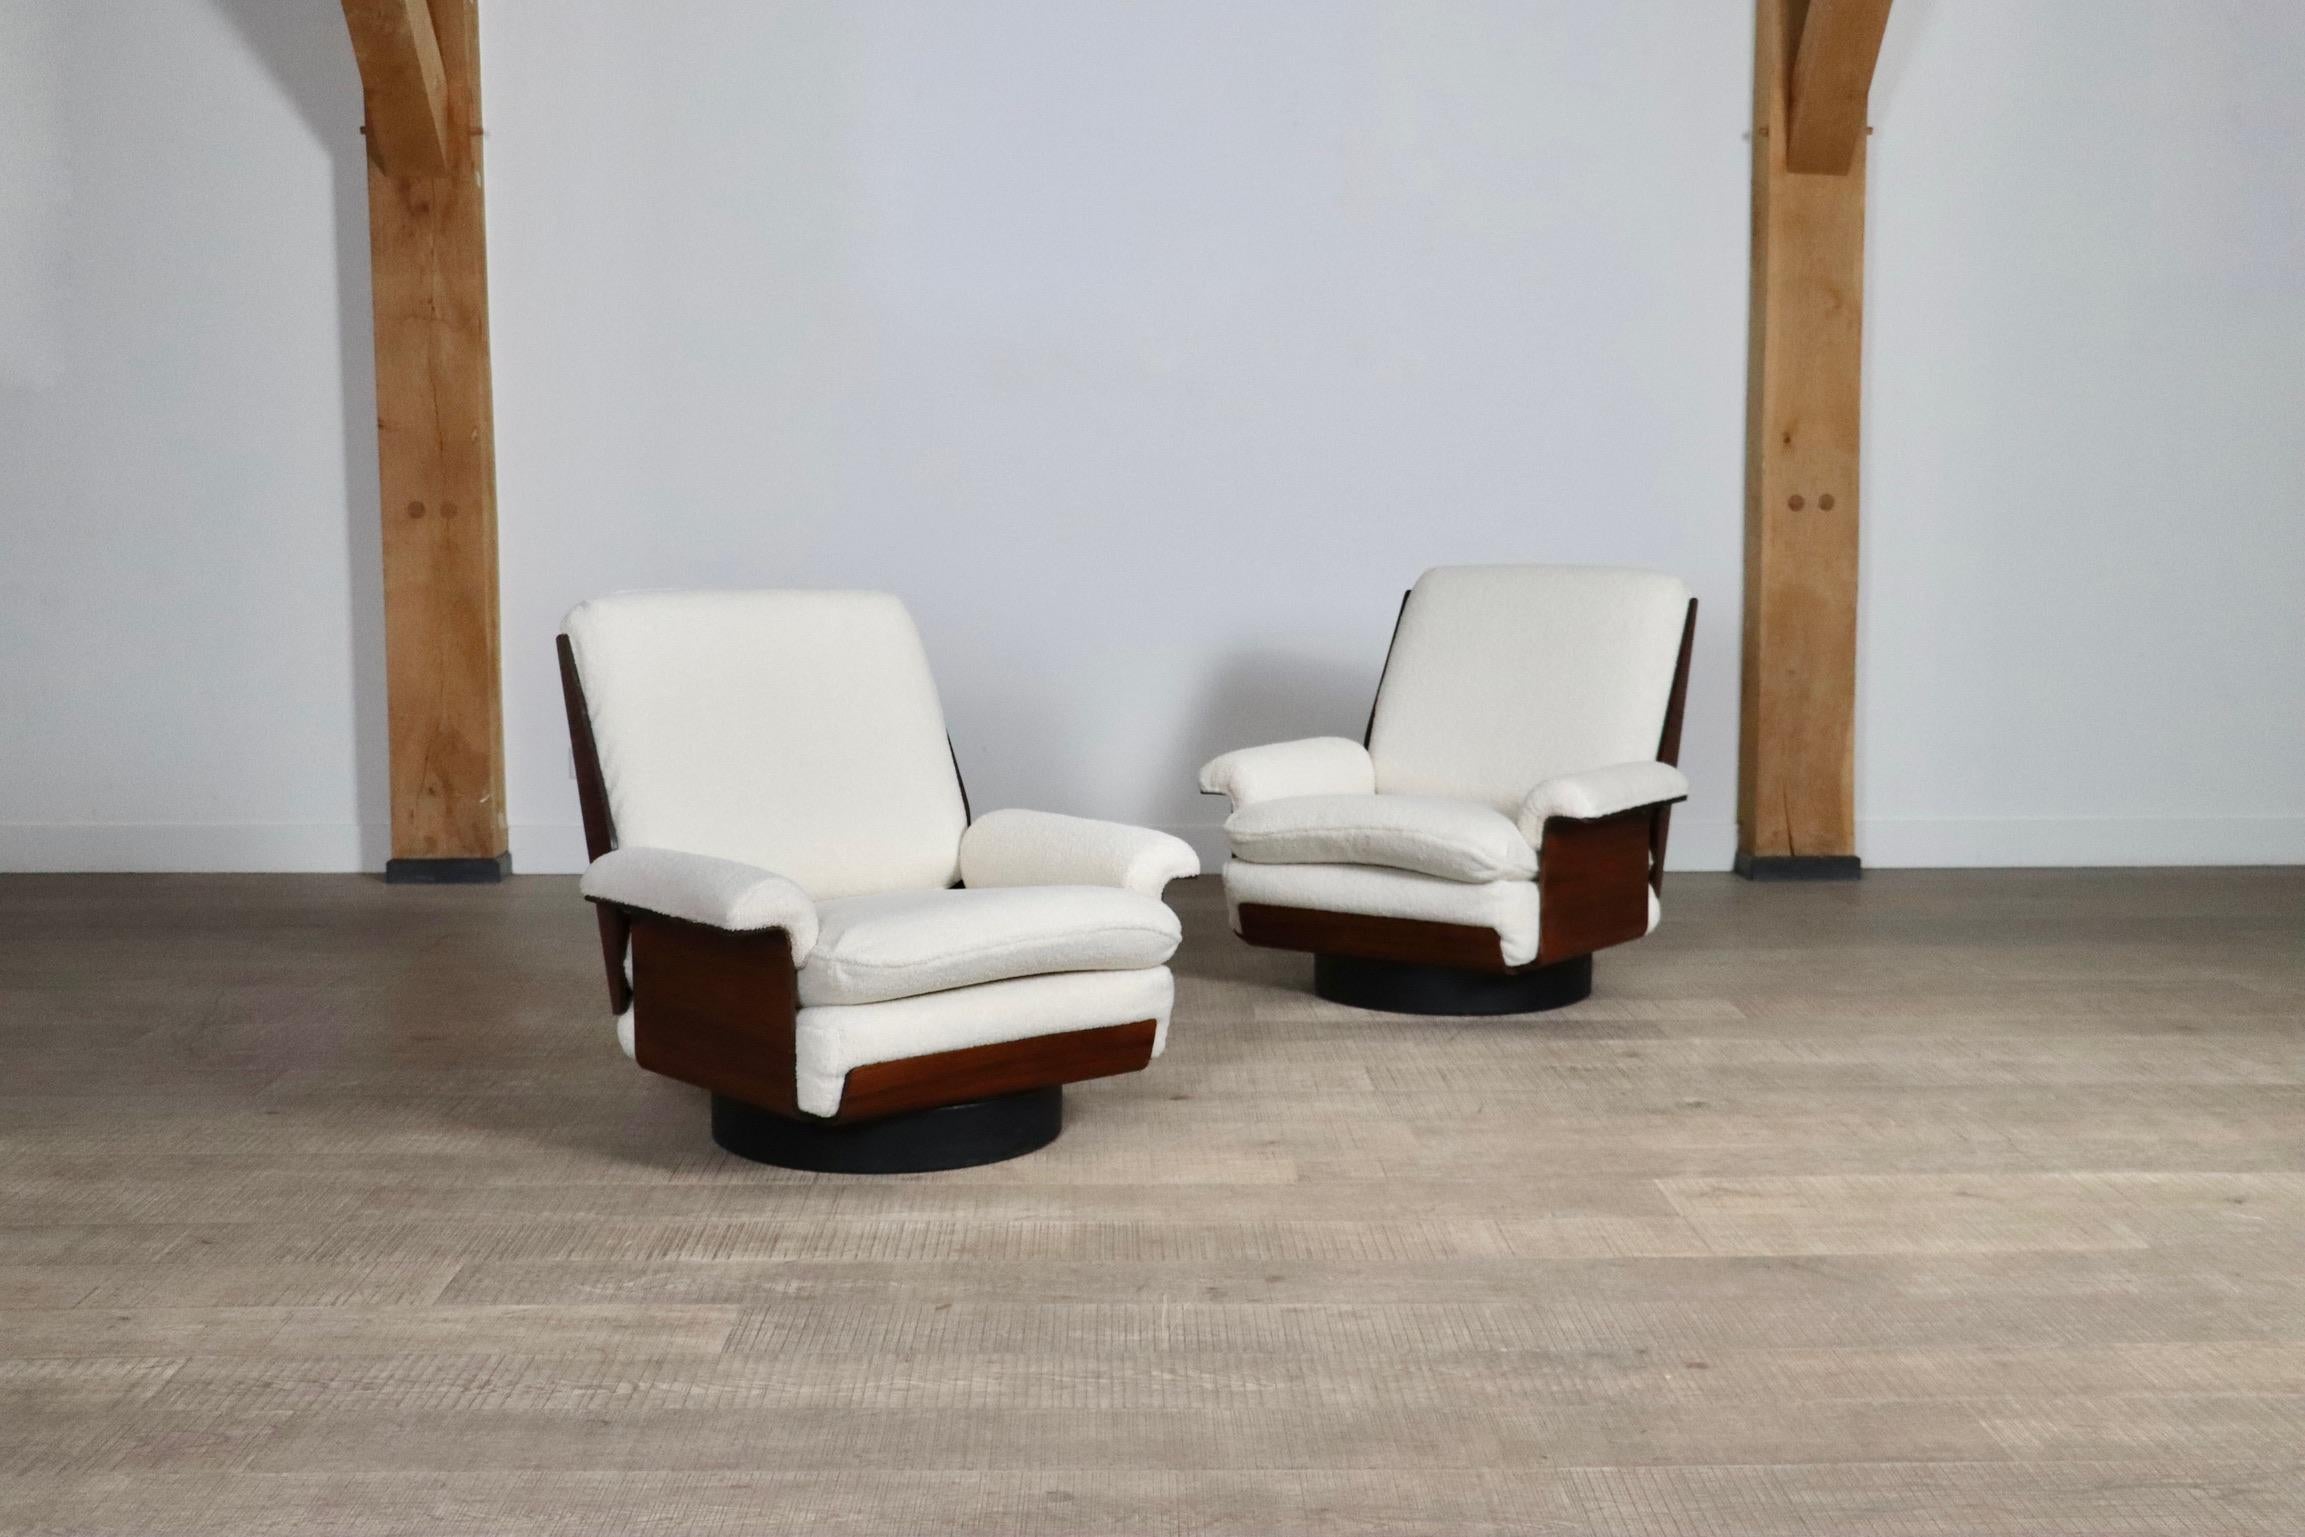 Schönes Set aus zwei Sesseln und einem Dreisitzer-Sofa Modell Viborg von Bernard Brunier für Coulon, 1960er Jahre.
Dieses elegante Design besteht aus einem Sperrholzrahmen mit wunderschönem Rio-Rosewood-Furnier, das professionell aufgearbeitet